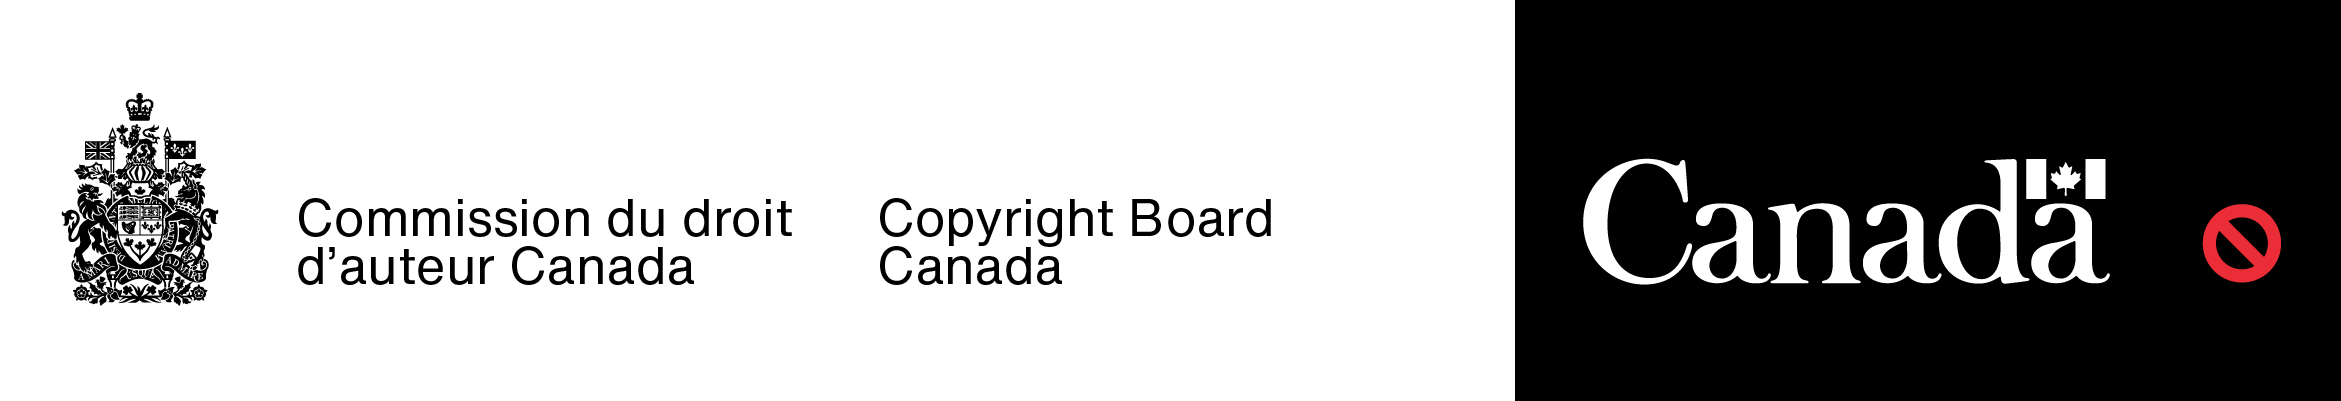 Exemple du mauvais jumelage de couleurs (le texte dans la signature avec armoiries et celui dans le mot-symbole « Canada » sont de couleurs différentes).